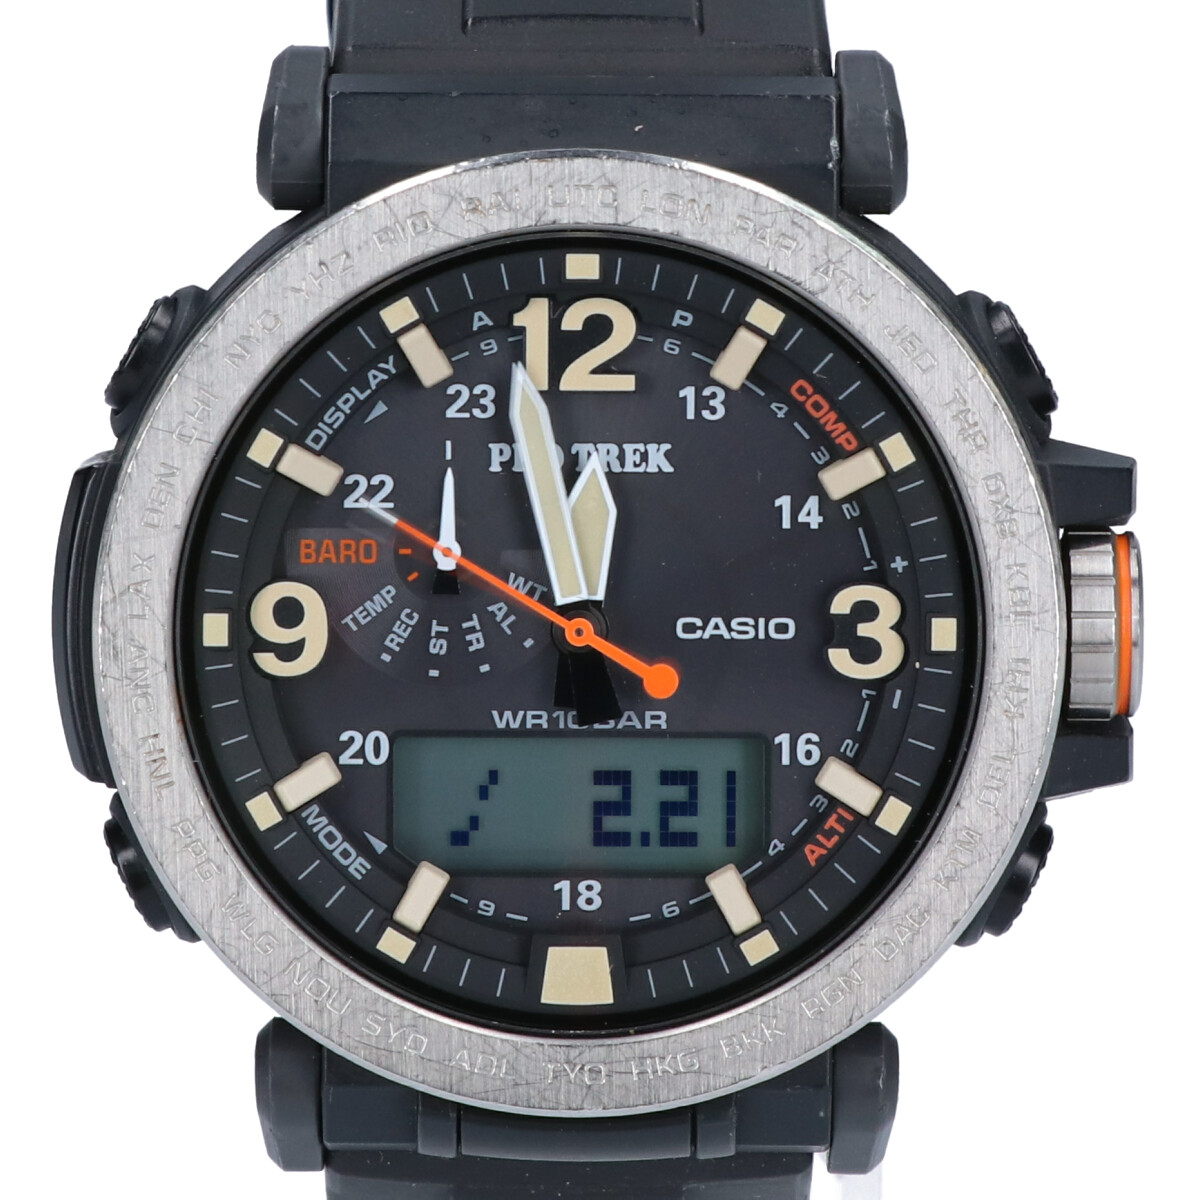 カシオのPRG-600-1JF PRO TREK プロトレック タフソーラー トリプルセンサー 時計の買取実績です。